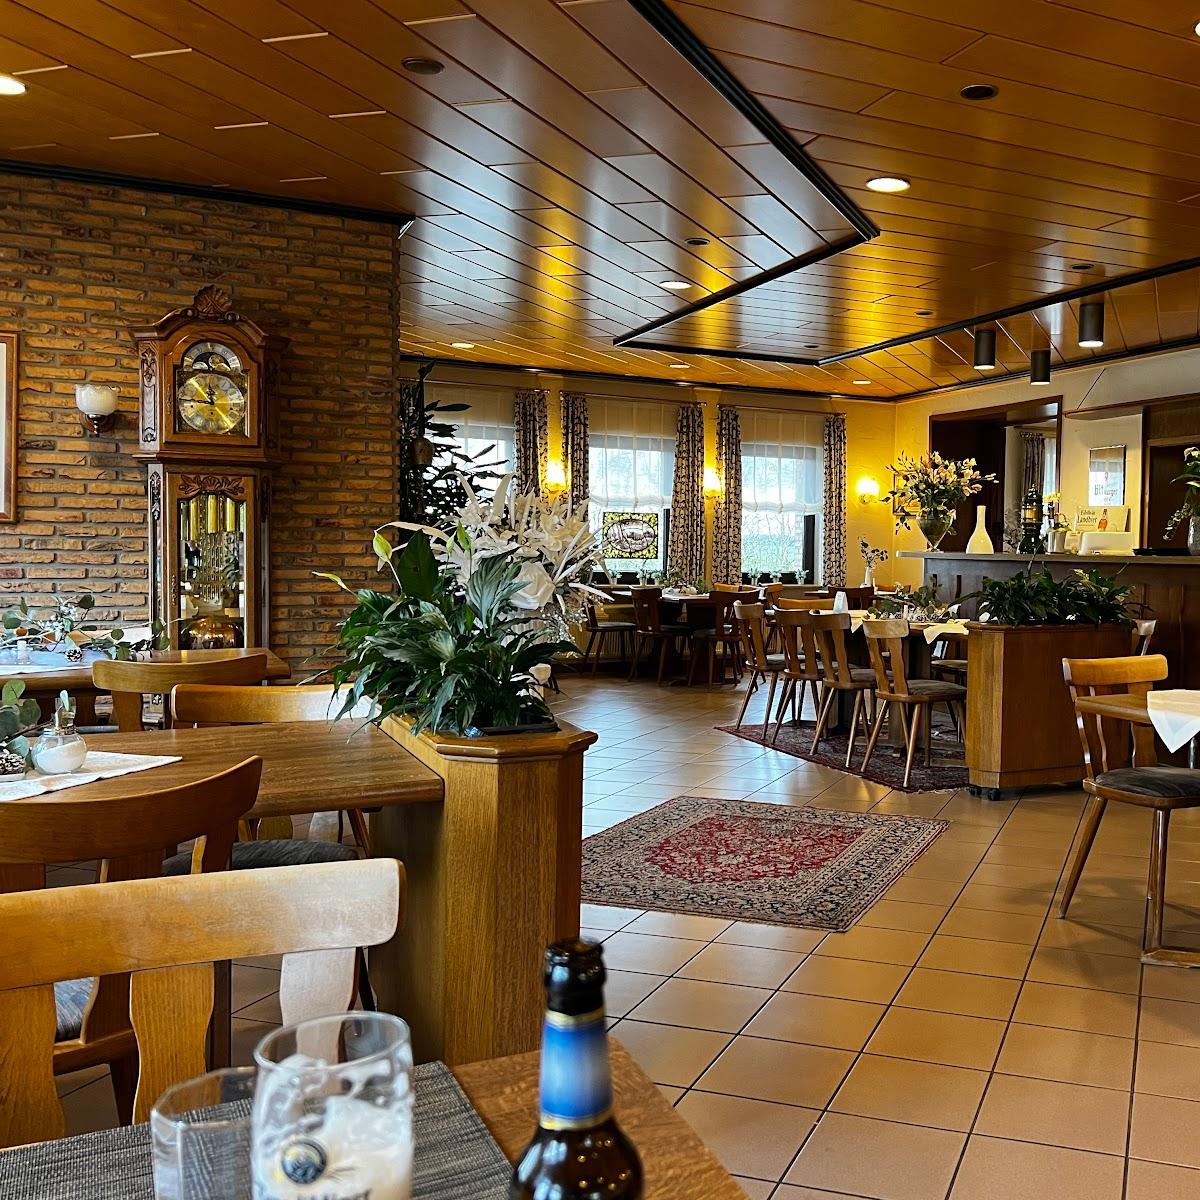 Restaurant "Gasthaus Hubertus" in Reuth